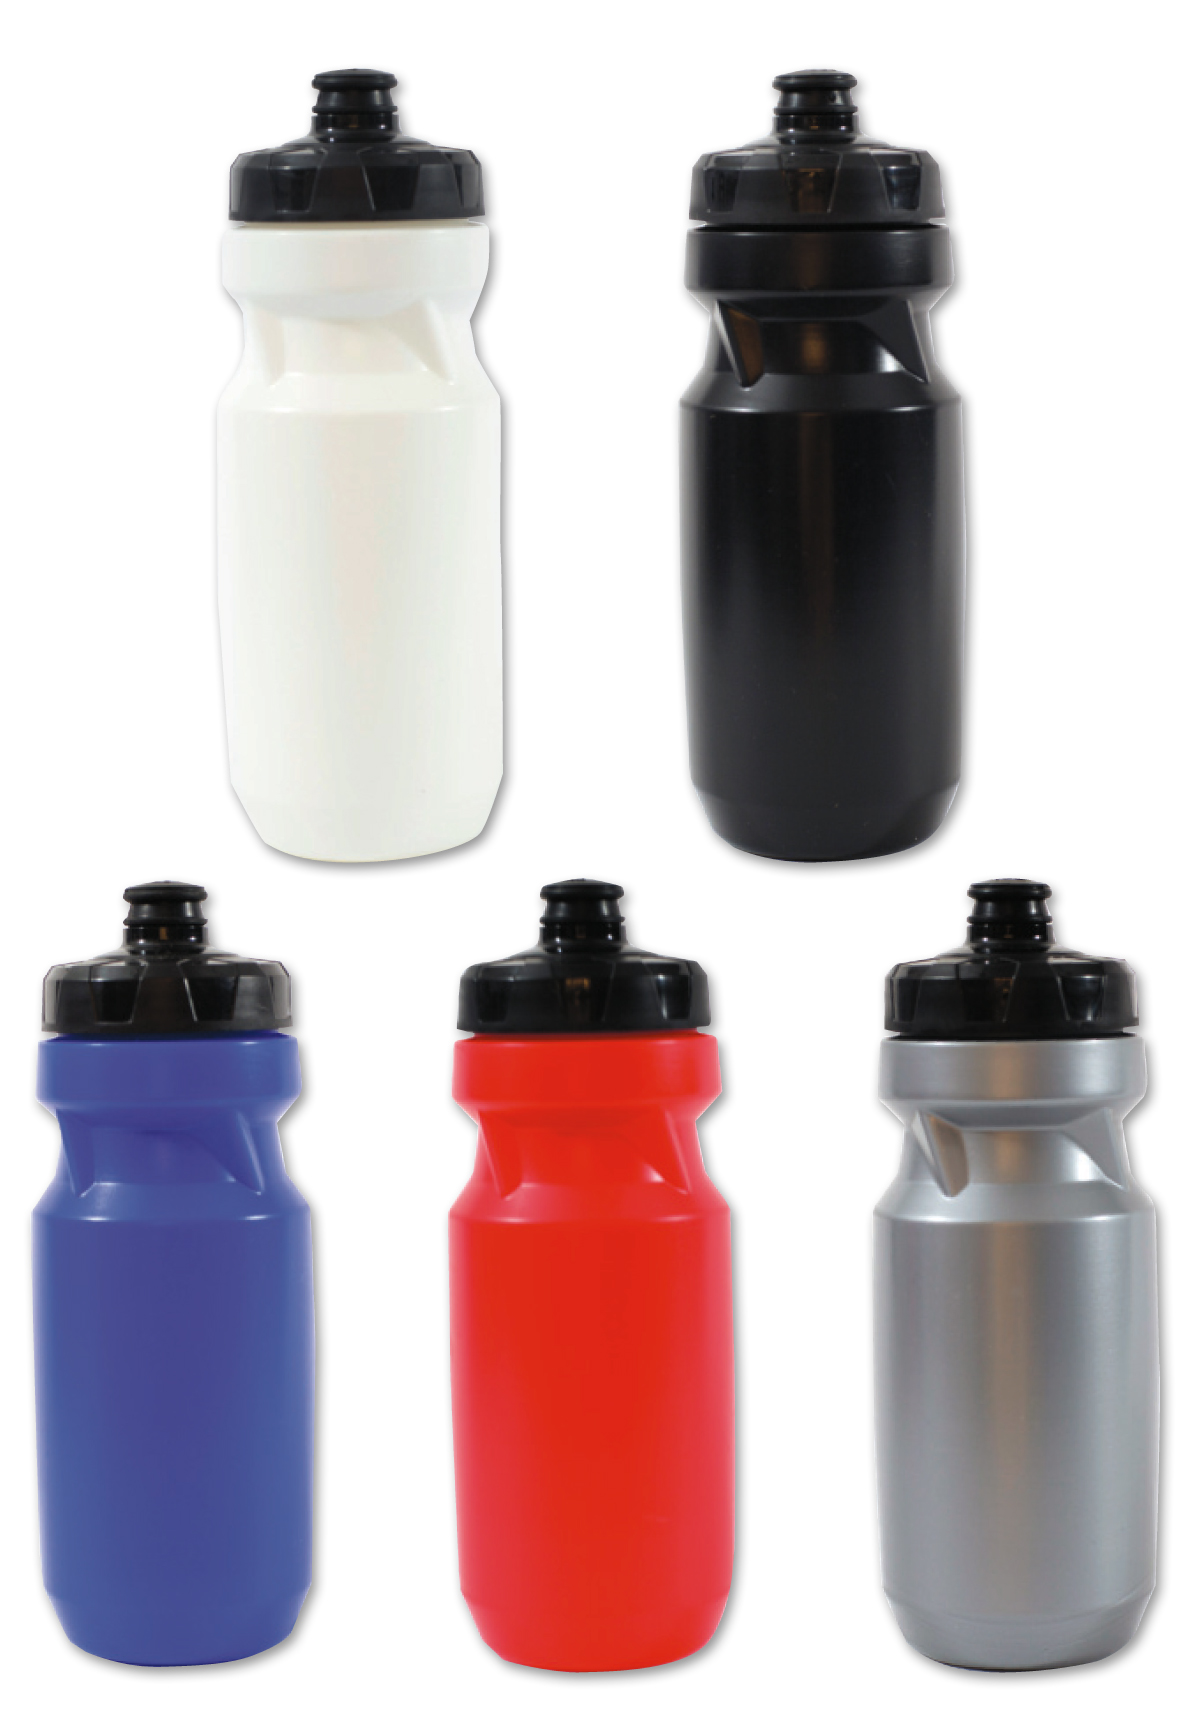 רוט - בקבוק שתיה מפלסטיק, פיית ספורט.
ללא BPA, באישור מכון התקנים.
600 מ